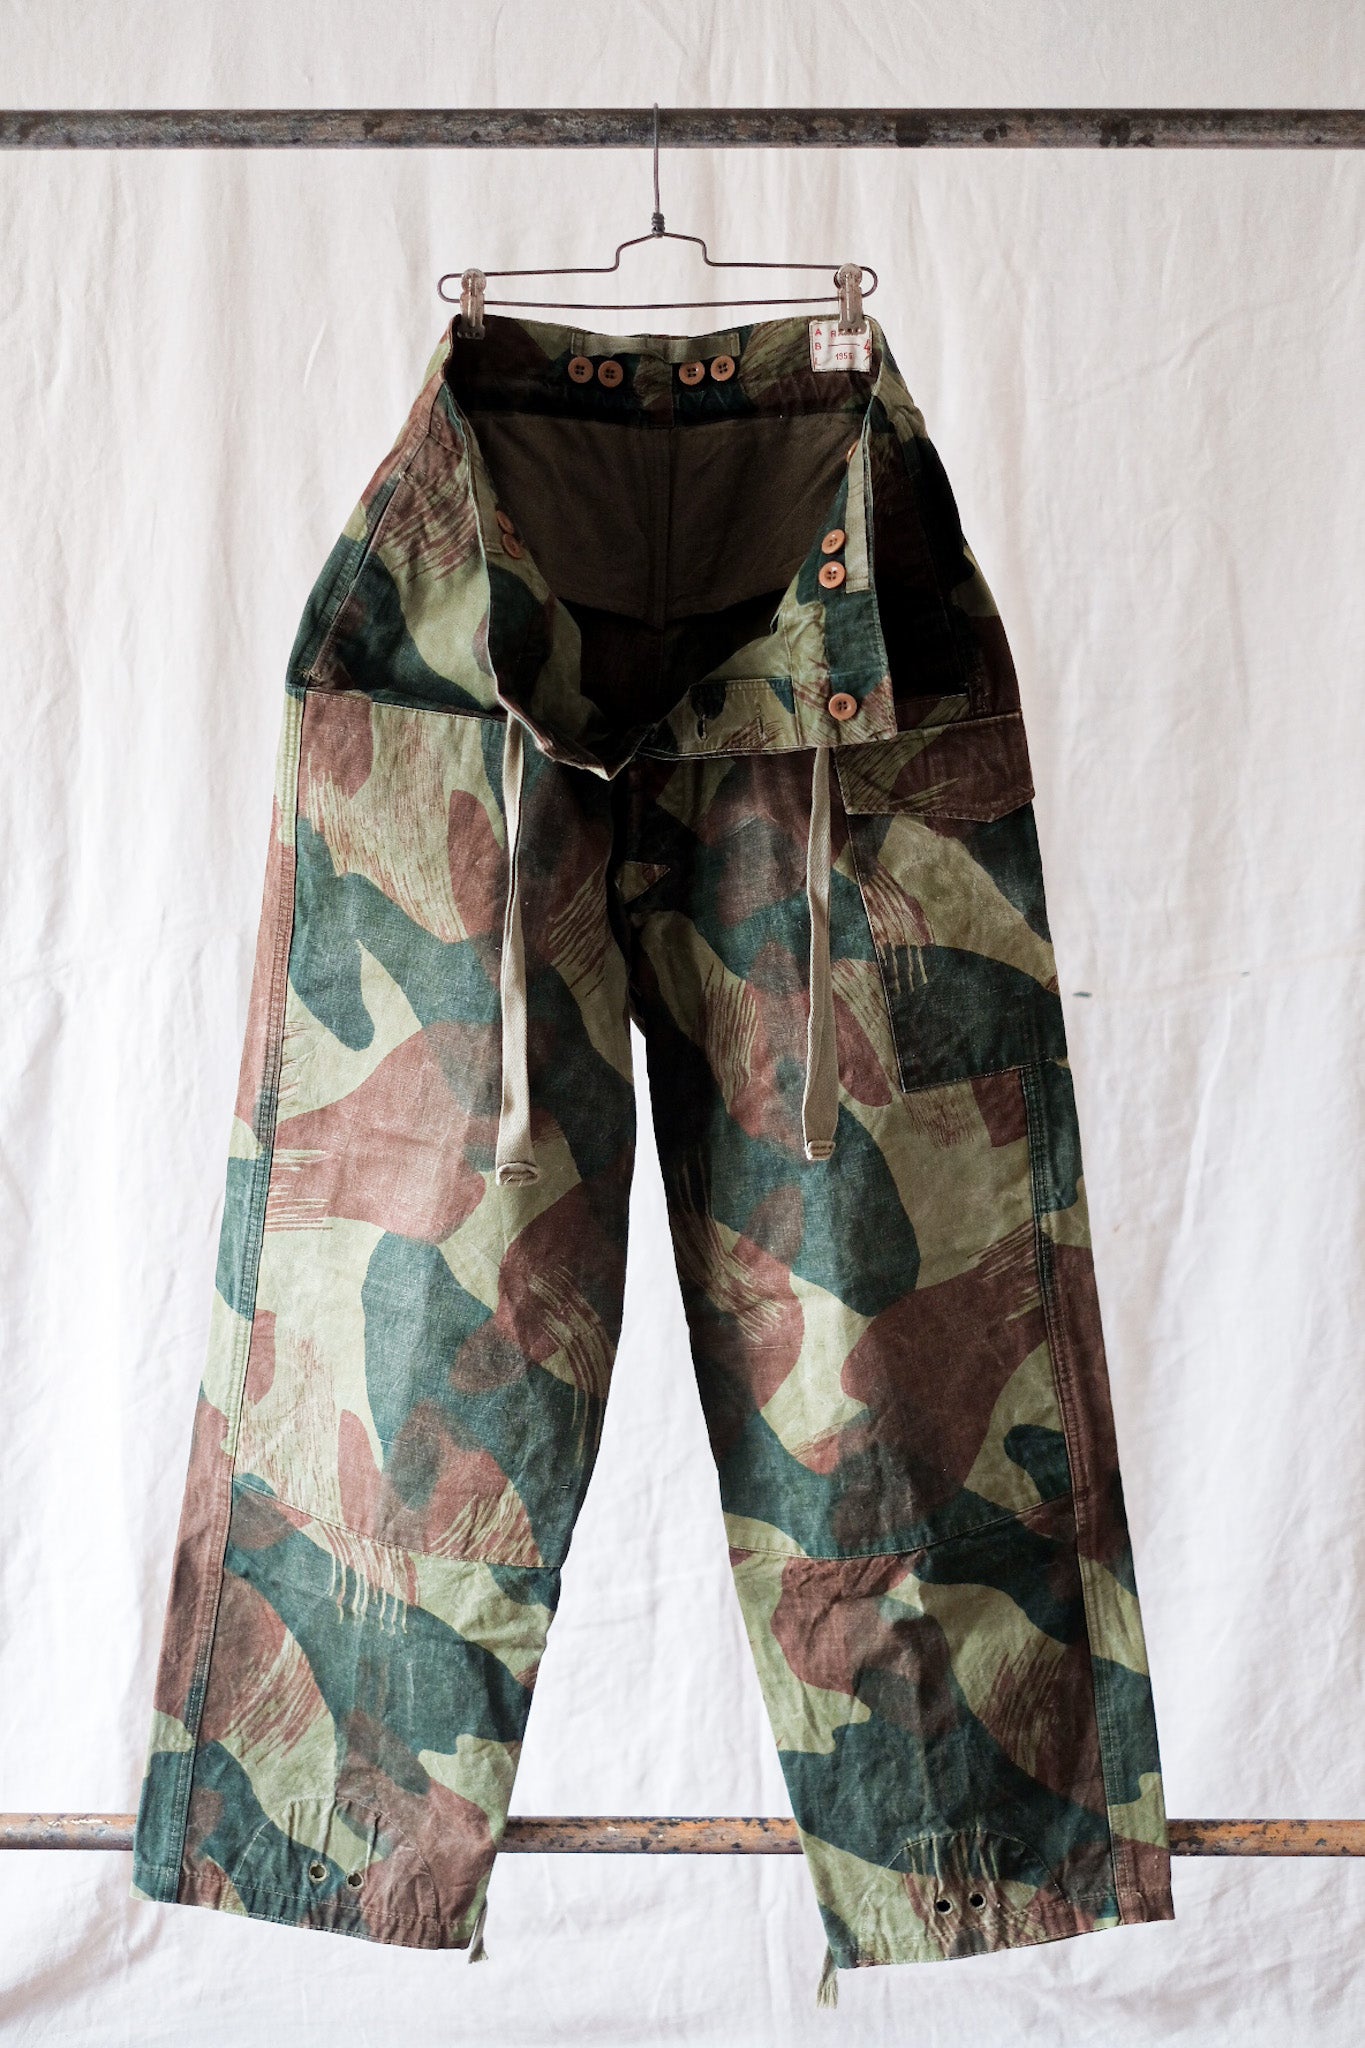 [〜50年代]比利時陸軍筆觸迷彩褲子大小。4